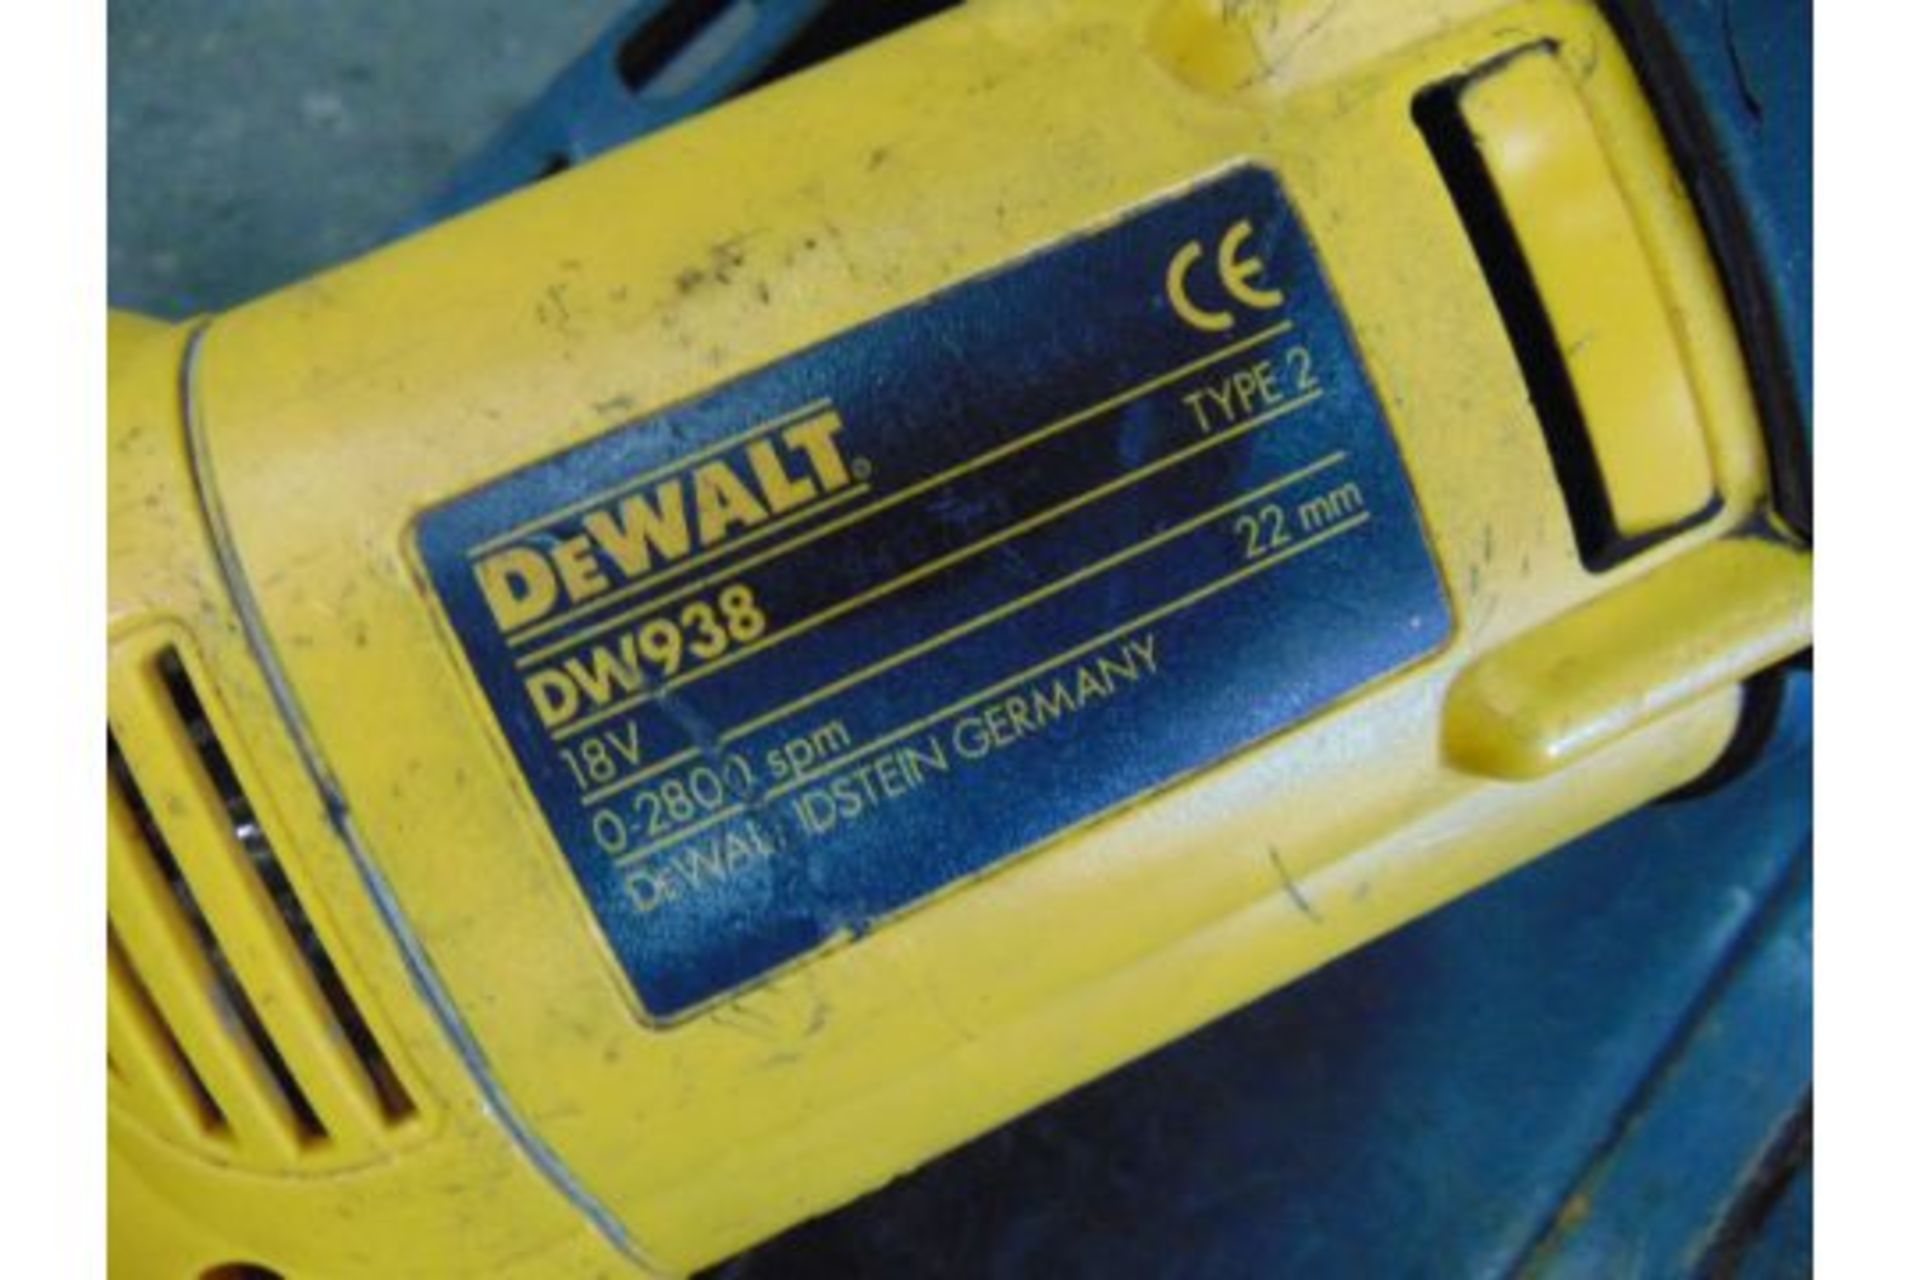 DeWalt DW938 Reciprocating Saw - Image 4 of 5